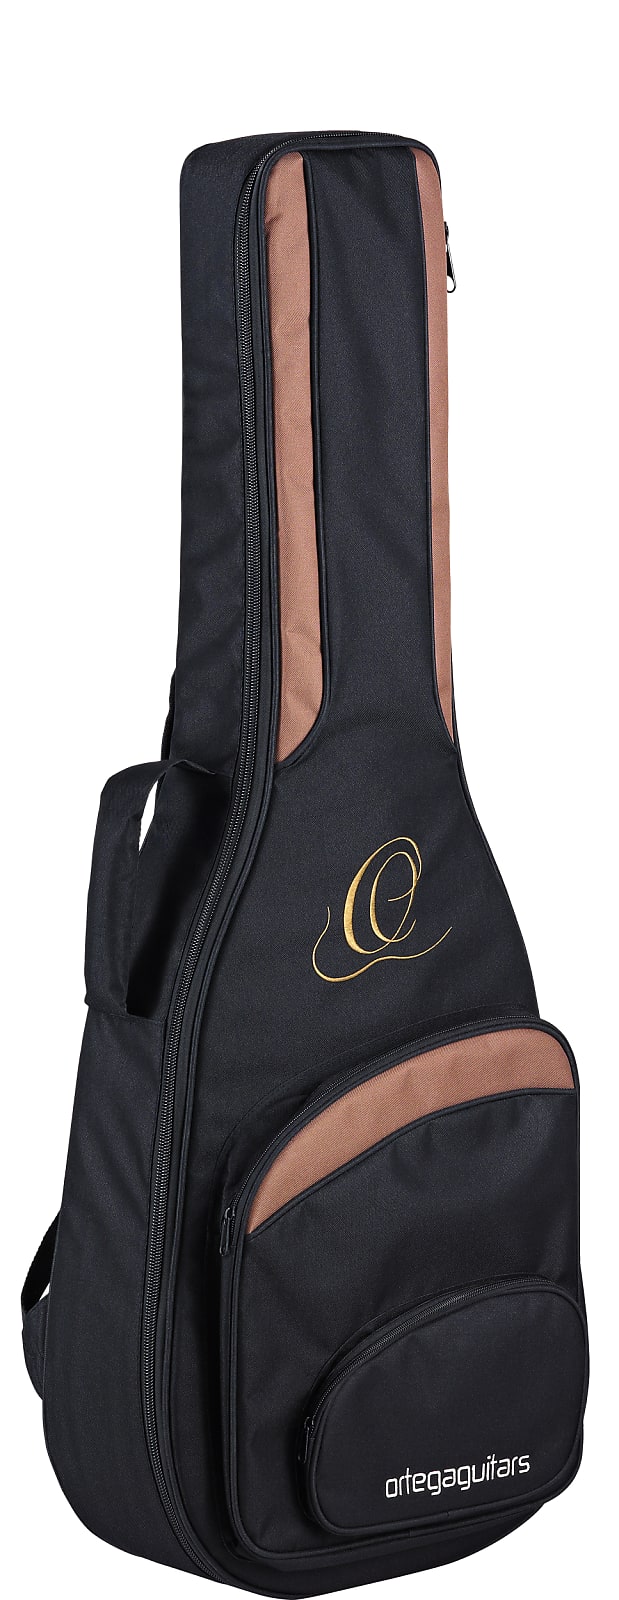 Ortega Family Pro Cedar Top Slim Neck Nylon String Acoustic Guitar R131SN w/Bag